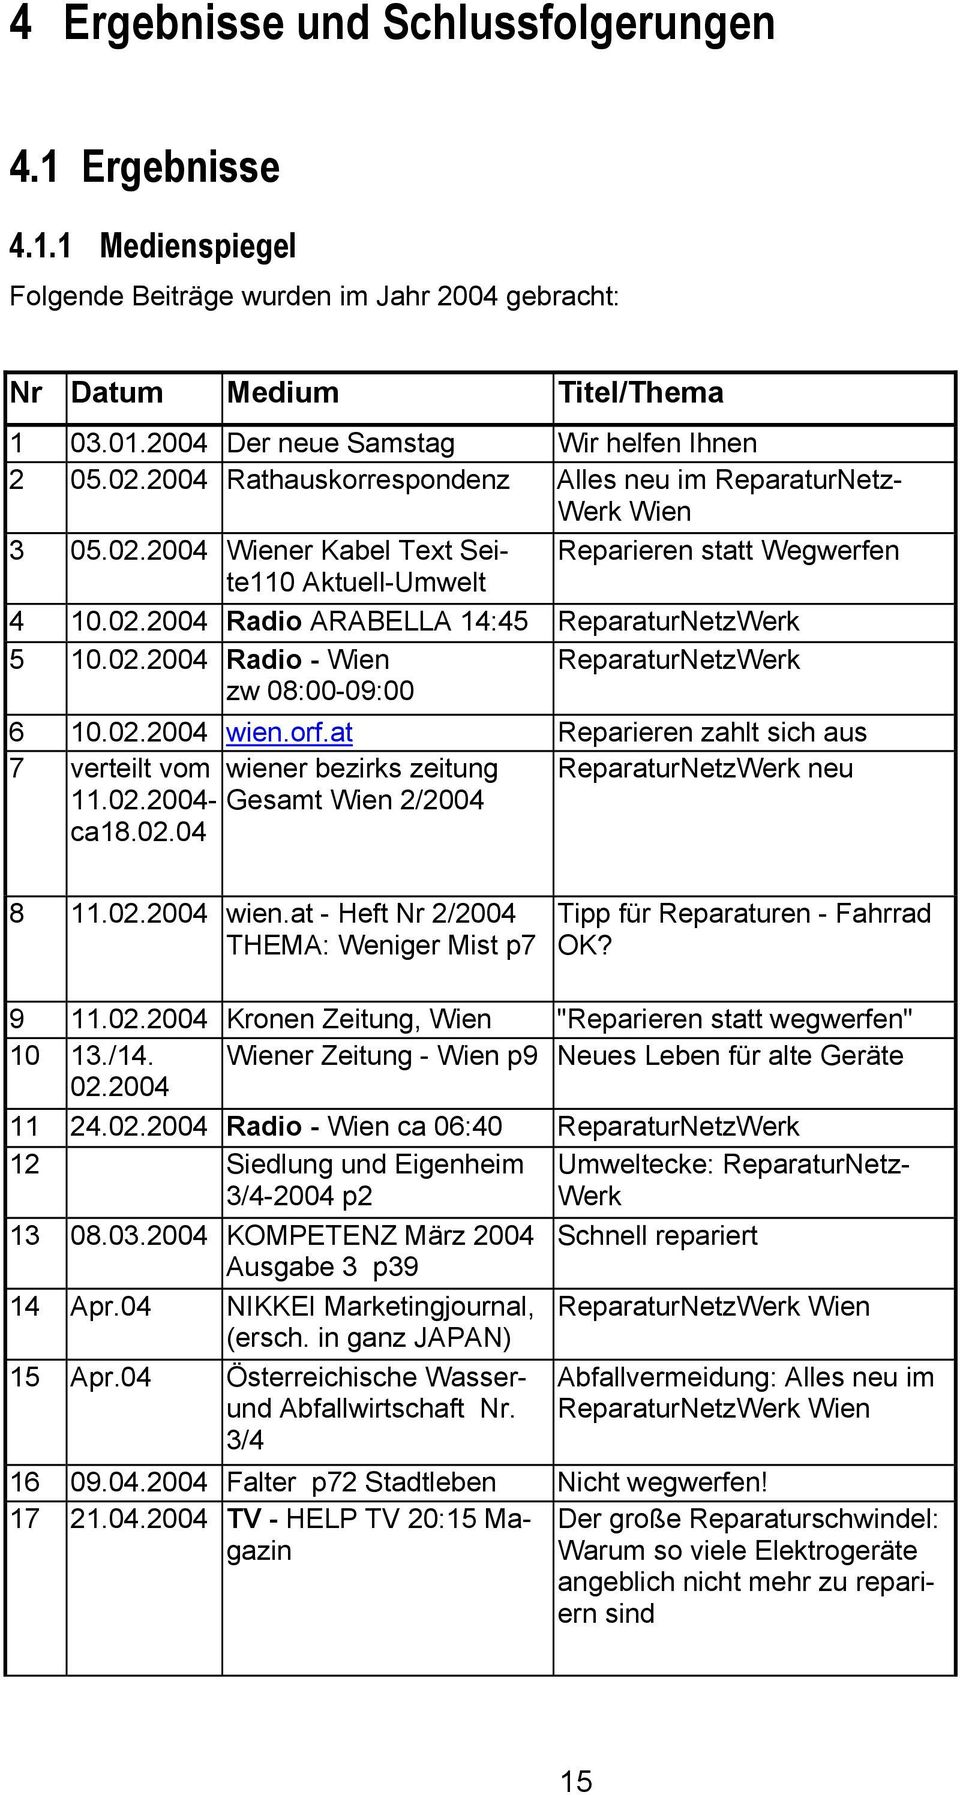 02.2004 Radio - Wien zw 08:00-09:00 ReparaturNetzWerk 6 10.02.2004 wien.orf.at Reparieren zahlt sich aus 7 verteilt vom wiener bezirks zeitung ReparaturNetzWerk neu 11.02.2004- Gesamt Wien 2/2004 ca18.